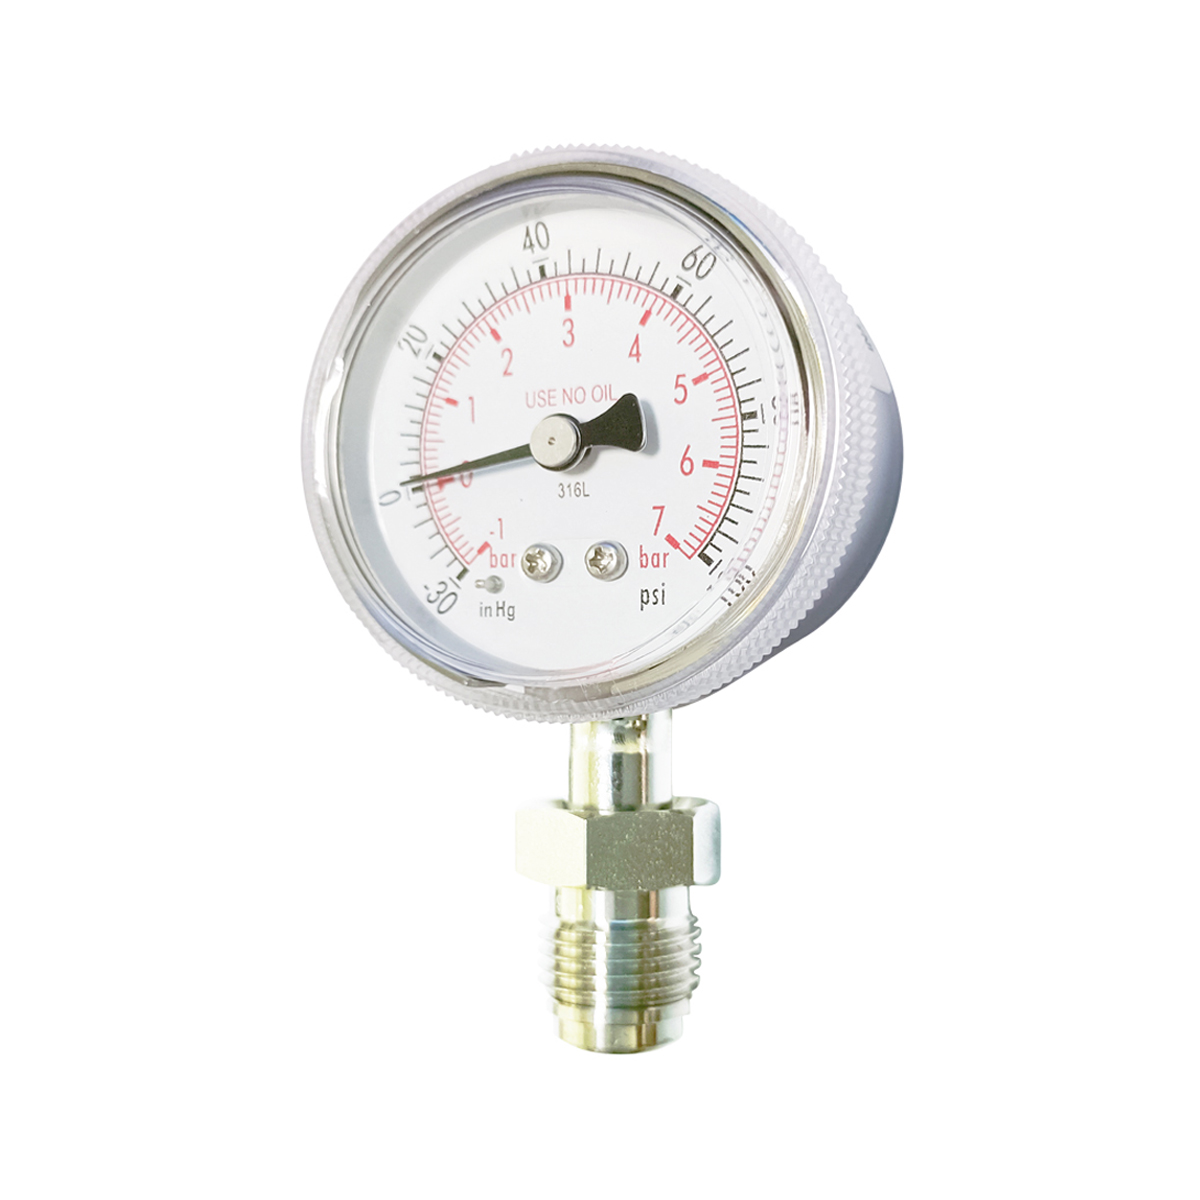 High purity pressure gauge(HPG,L- pressure) -VCR1/4